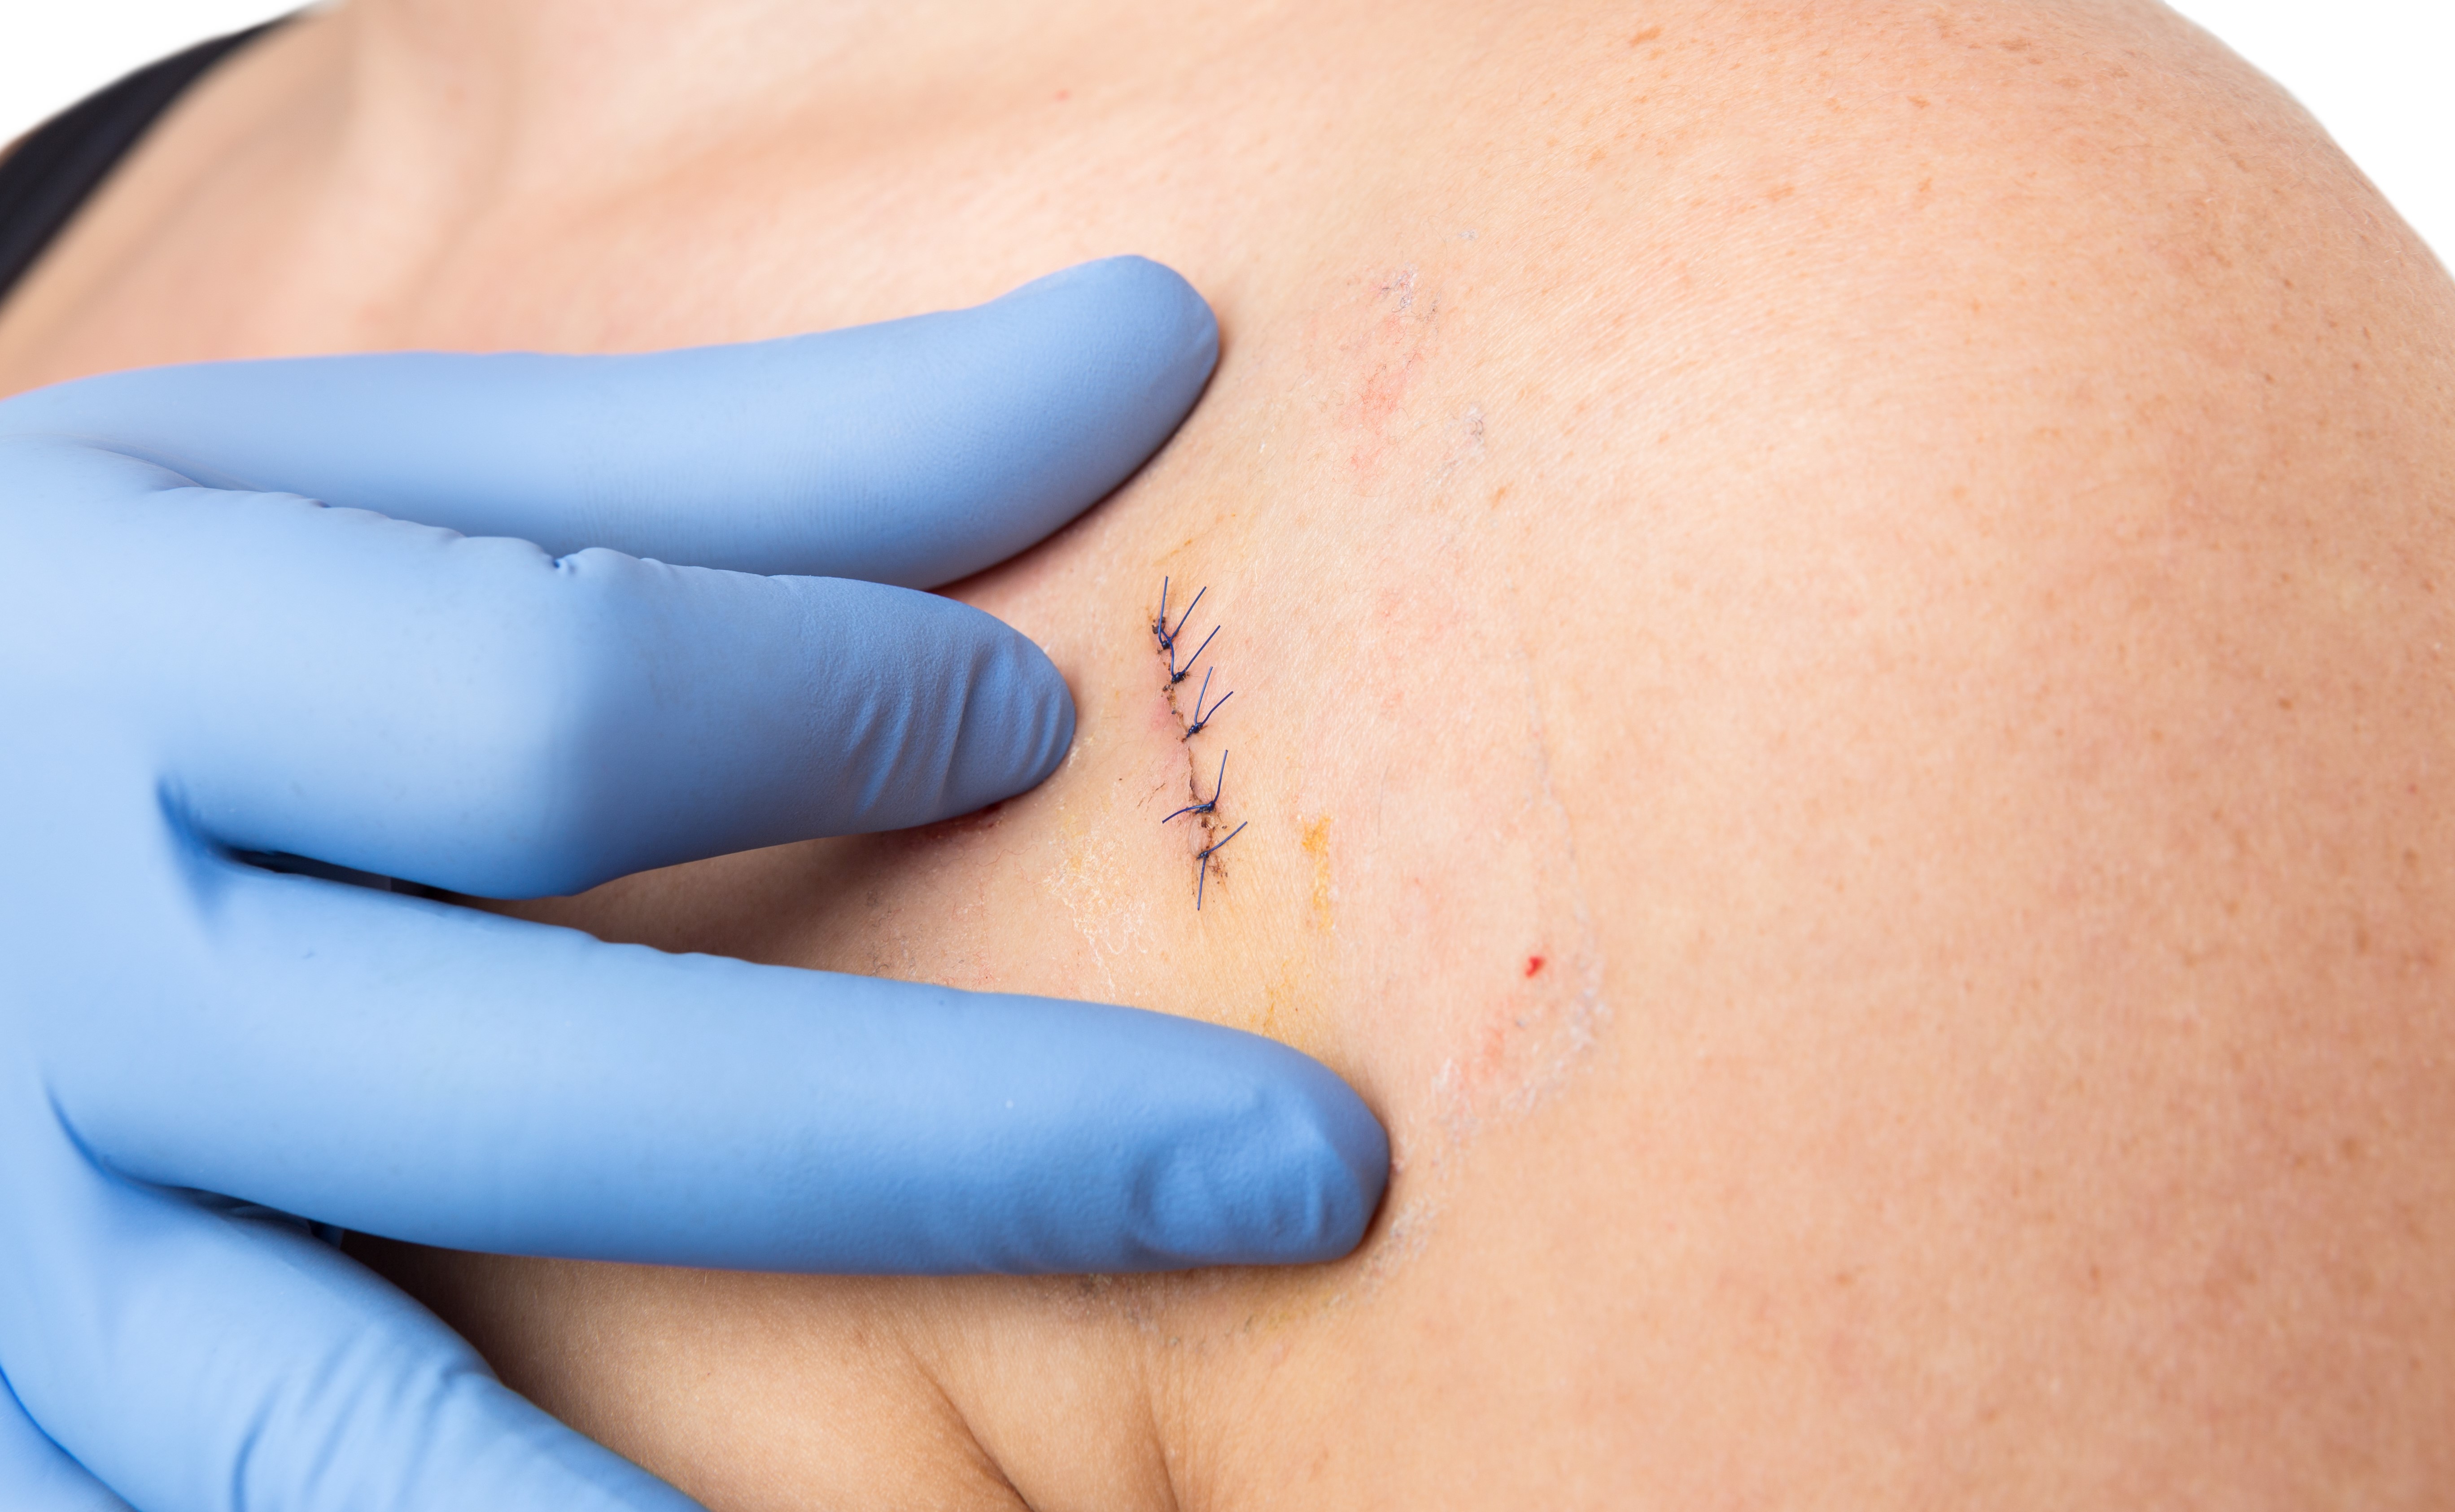 mole removal scar stitches